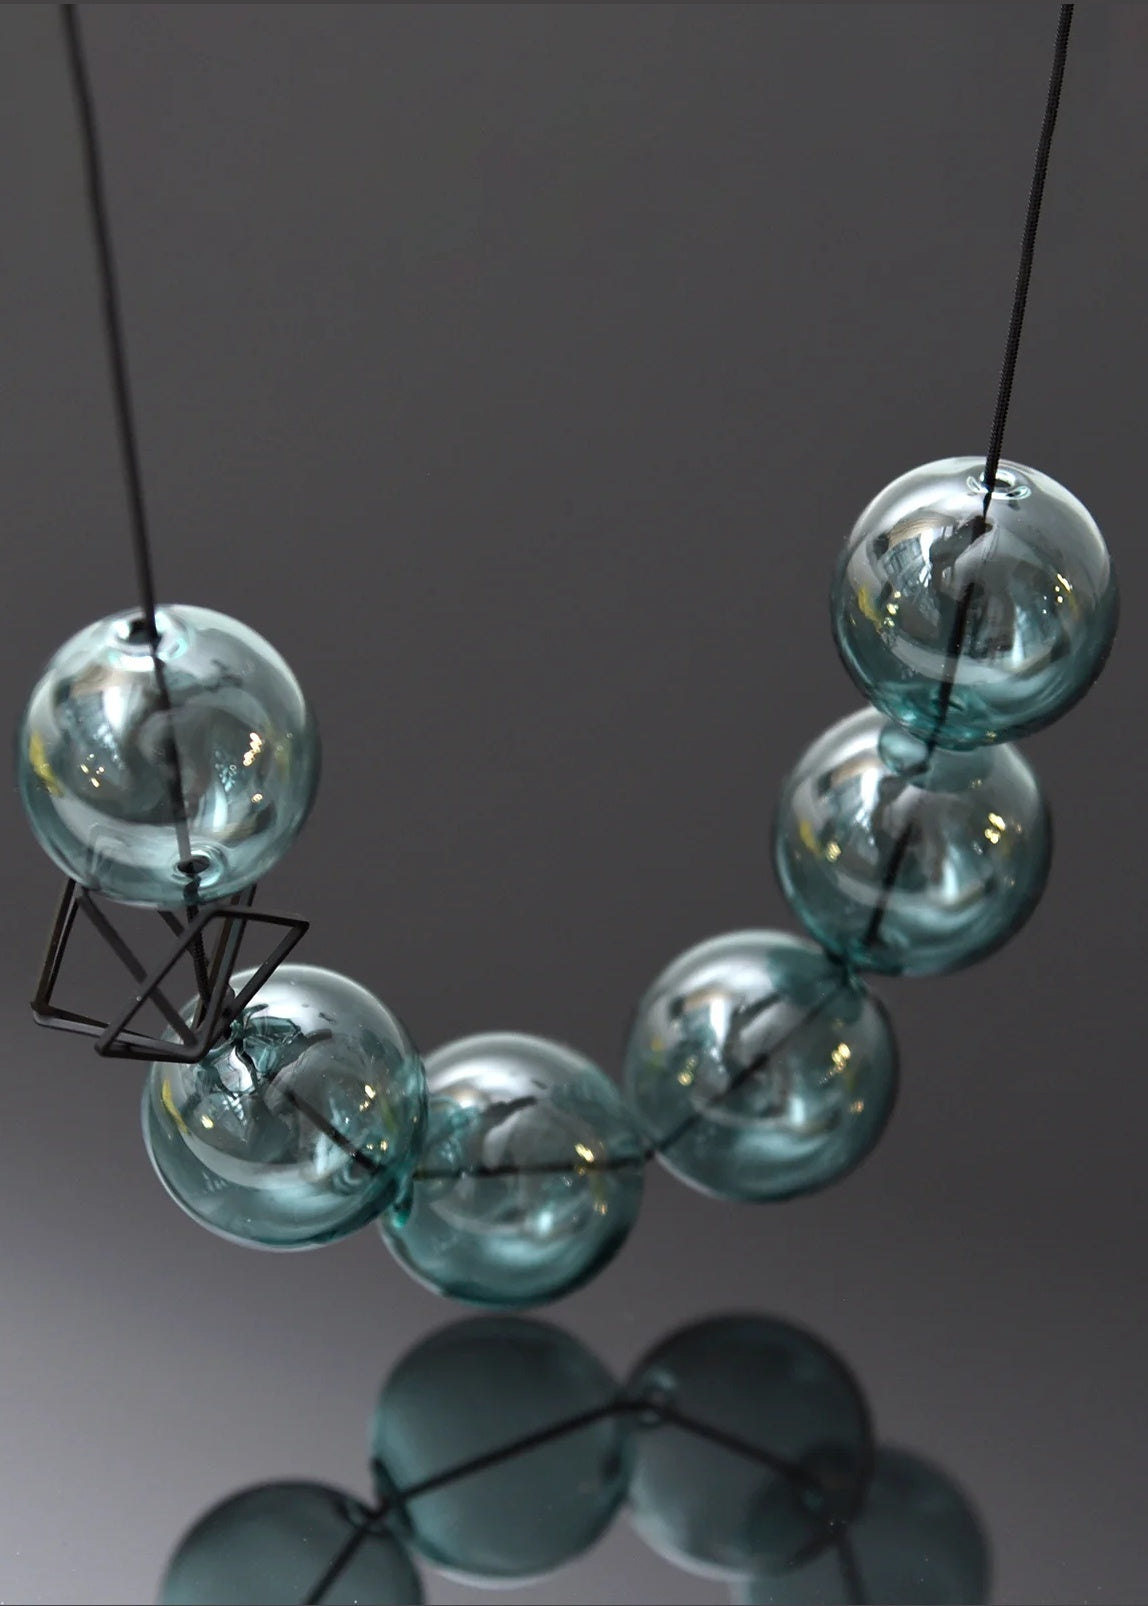 Pursuits - Bonbons Necklace Glass